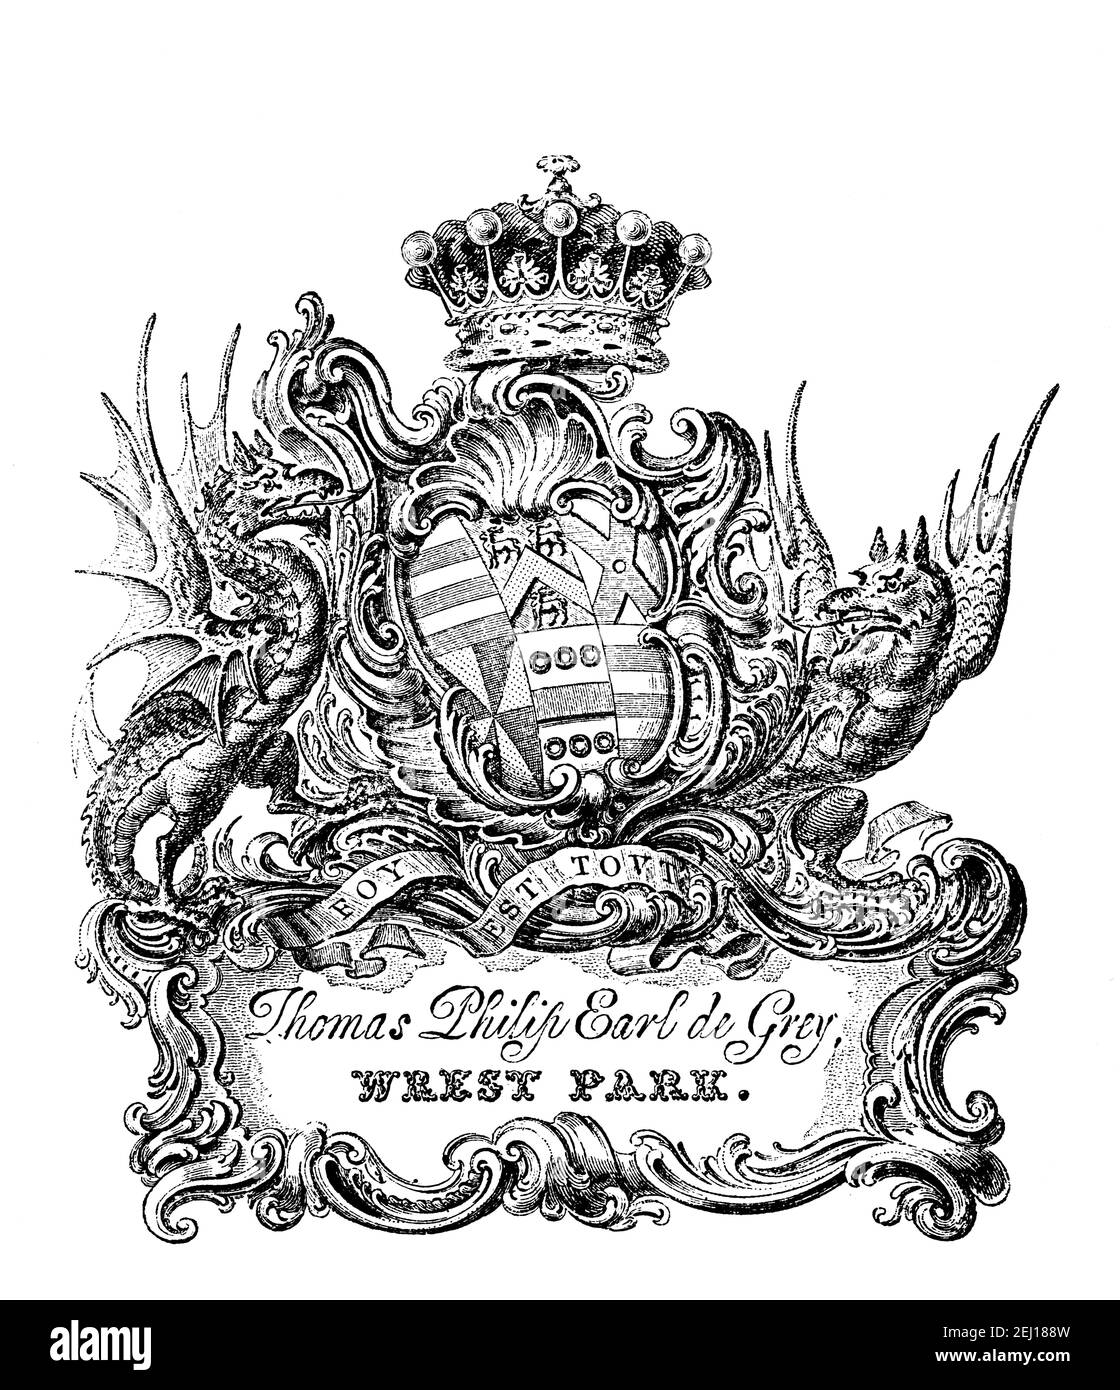 Bibliothèque des armoiries du Britannique Tory Statesman, Thomas Philip Earl de Grey (1781-1859) de Wrest Park, Bedfordshire Banque D'Images